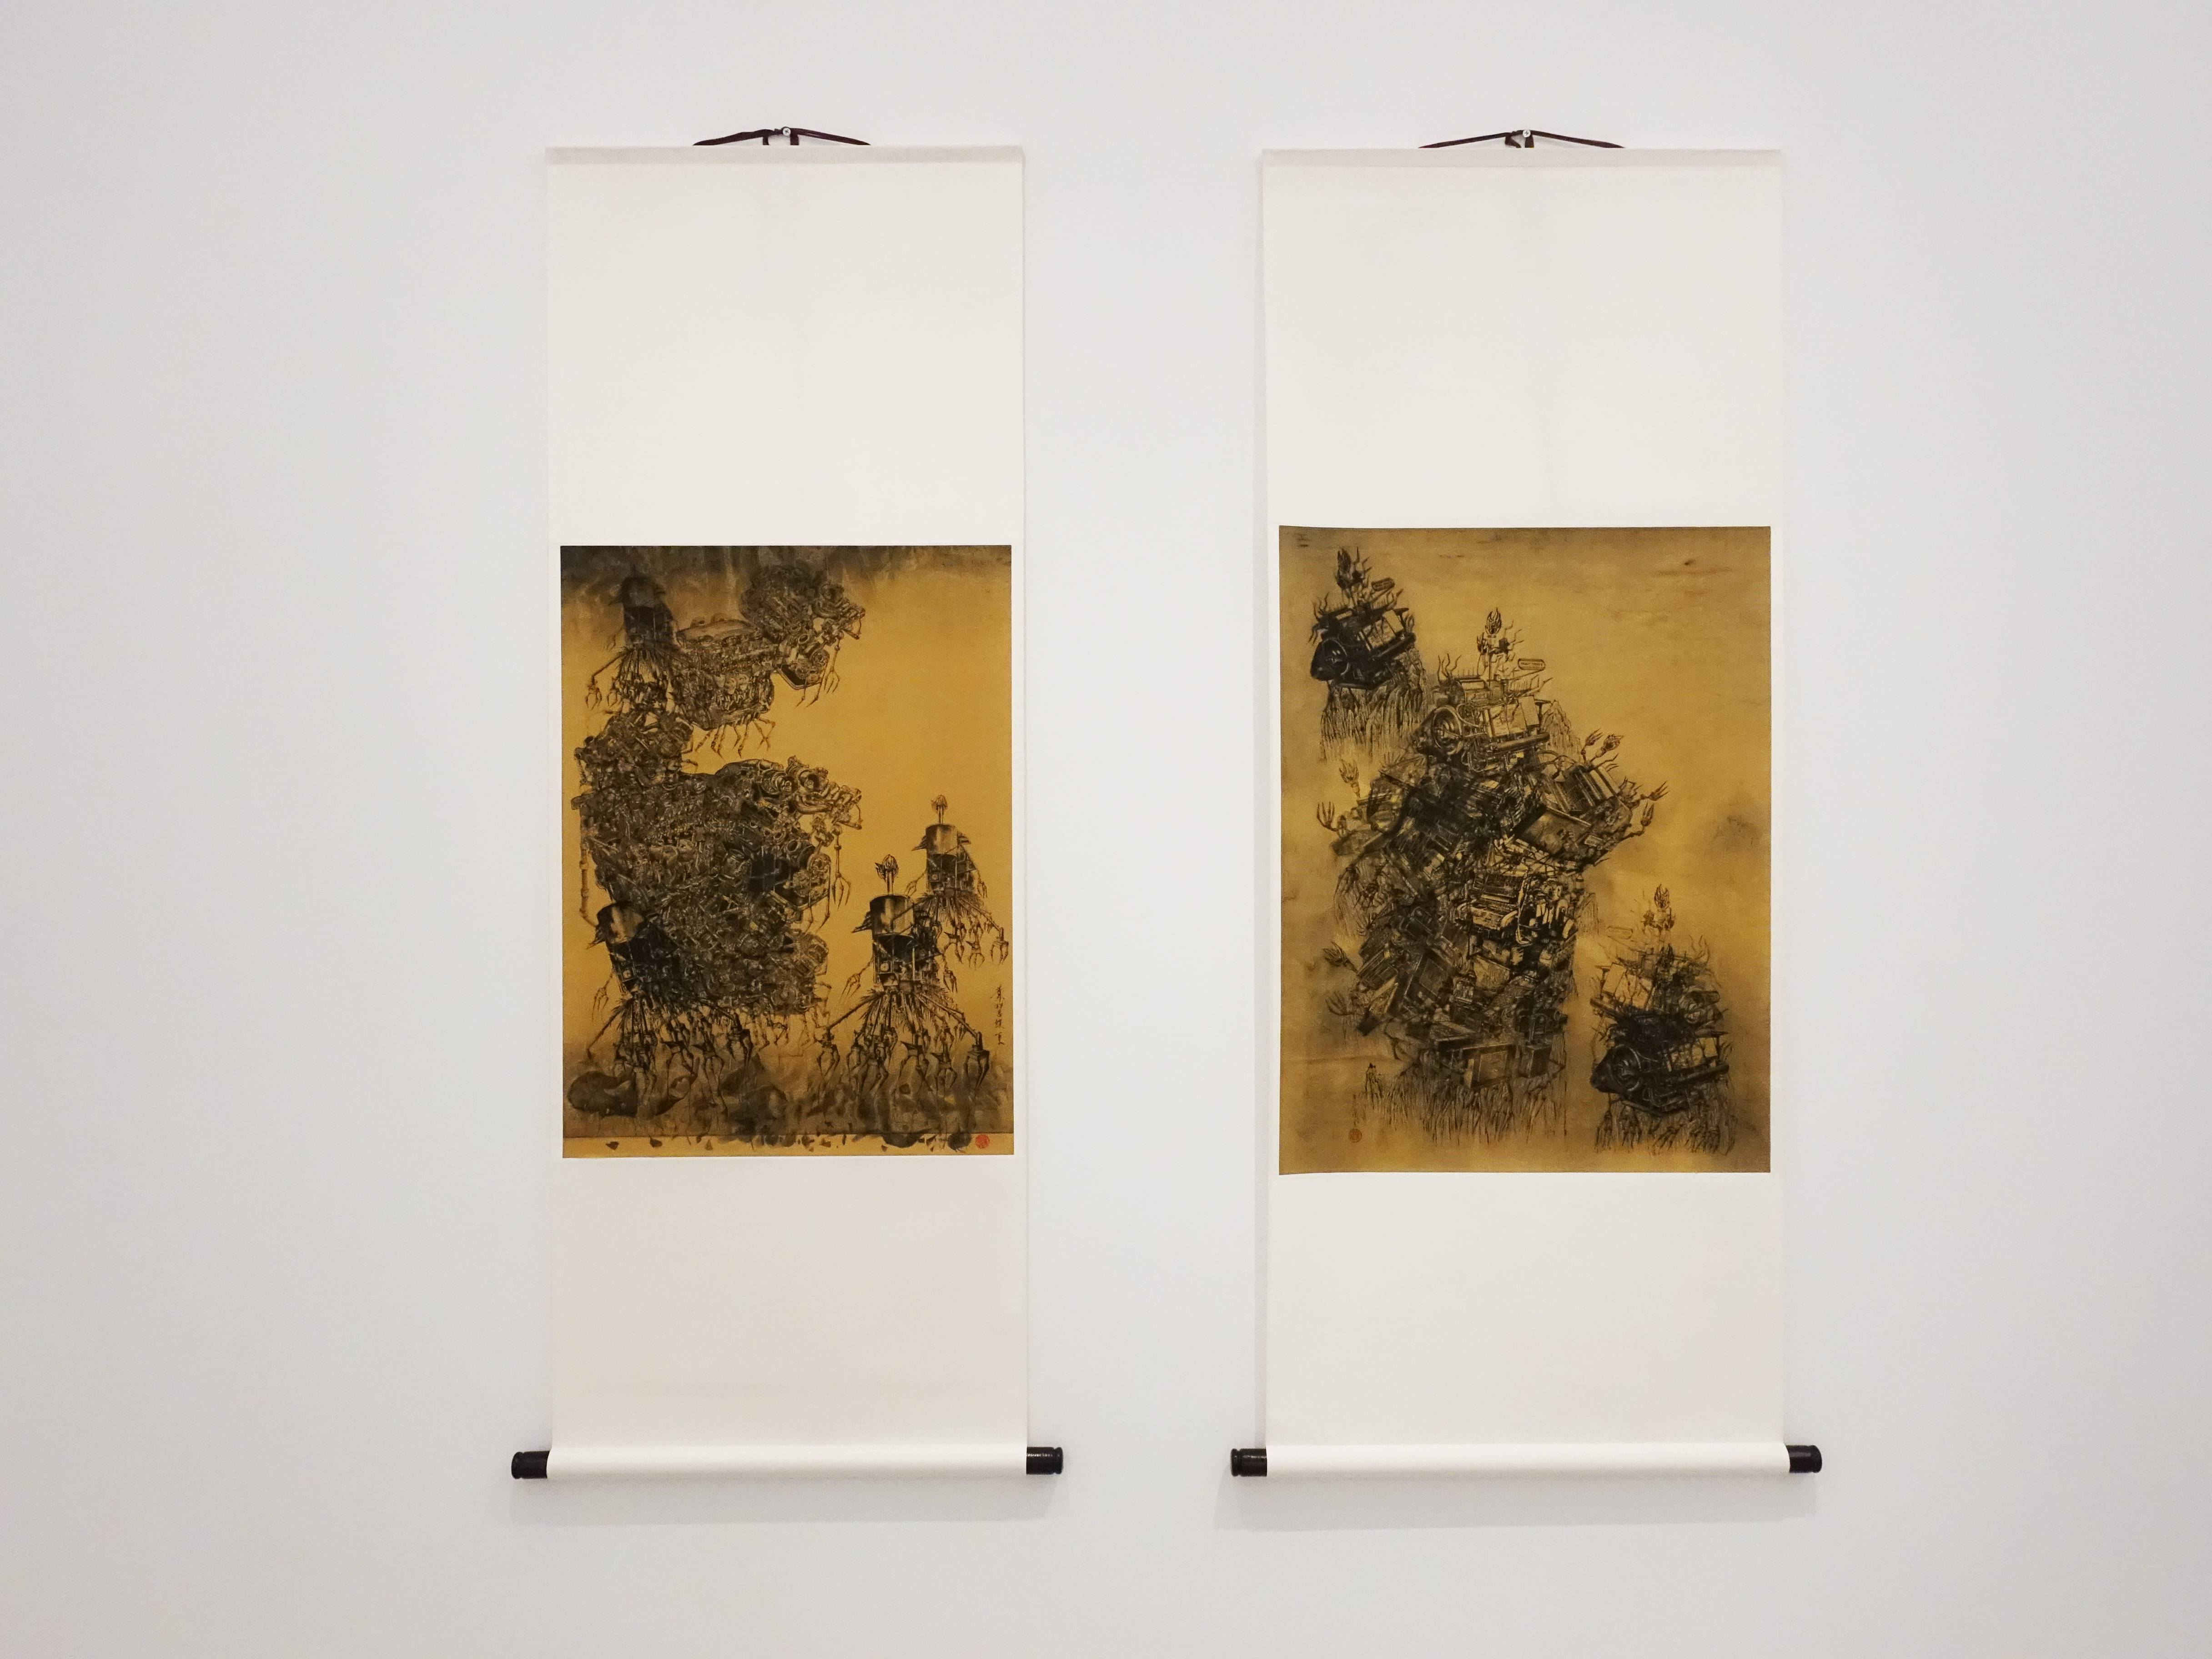 葉慧琪，《機械山水-矗立》，53 x 69.5 cm，綜合媒材、絹布(右)。葉慧琪，《機械山水-枯岩》，48.5 x 66 cm，綜合媒材、絹布(左)。